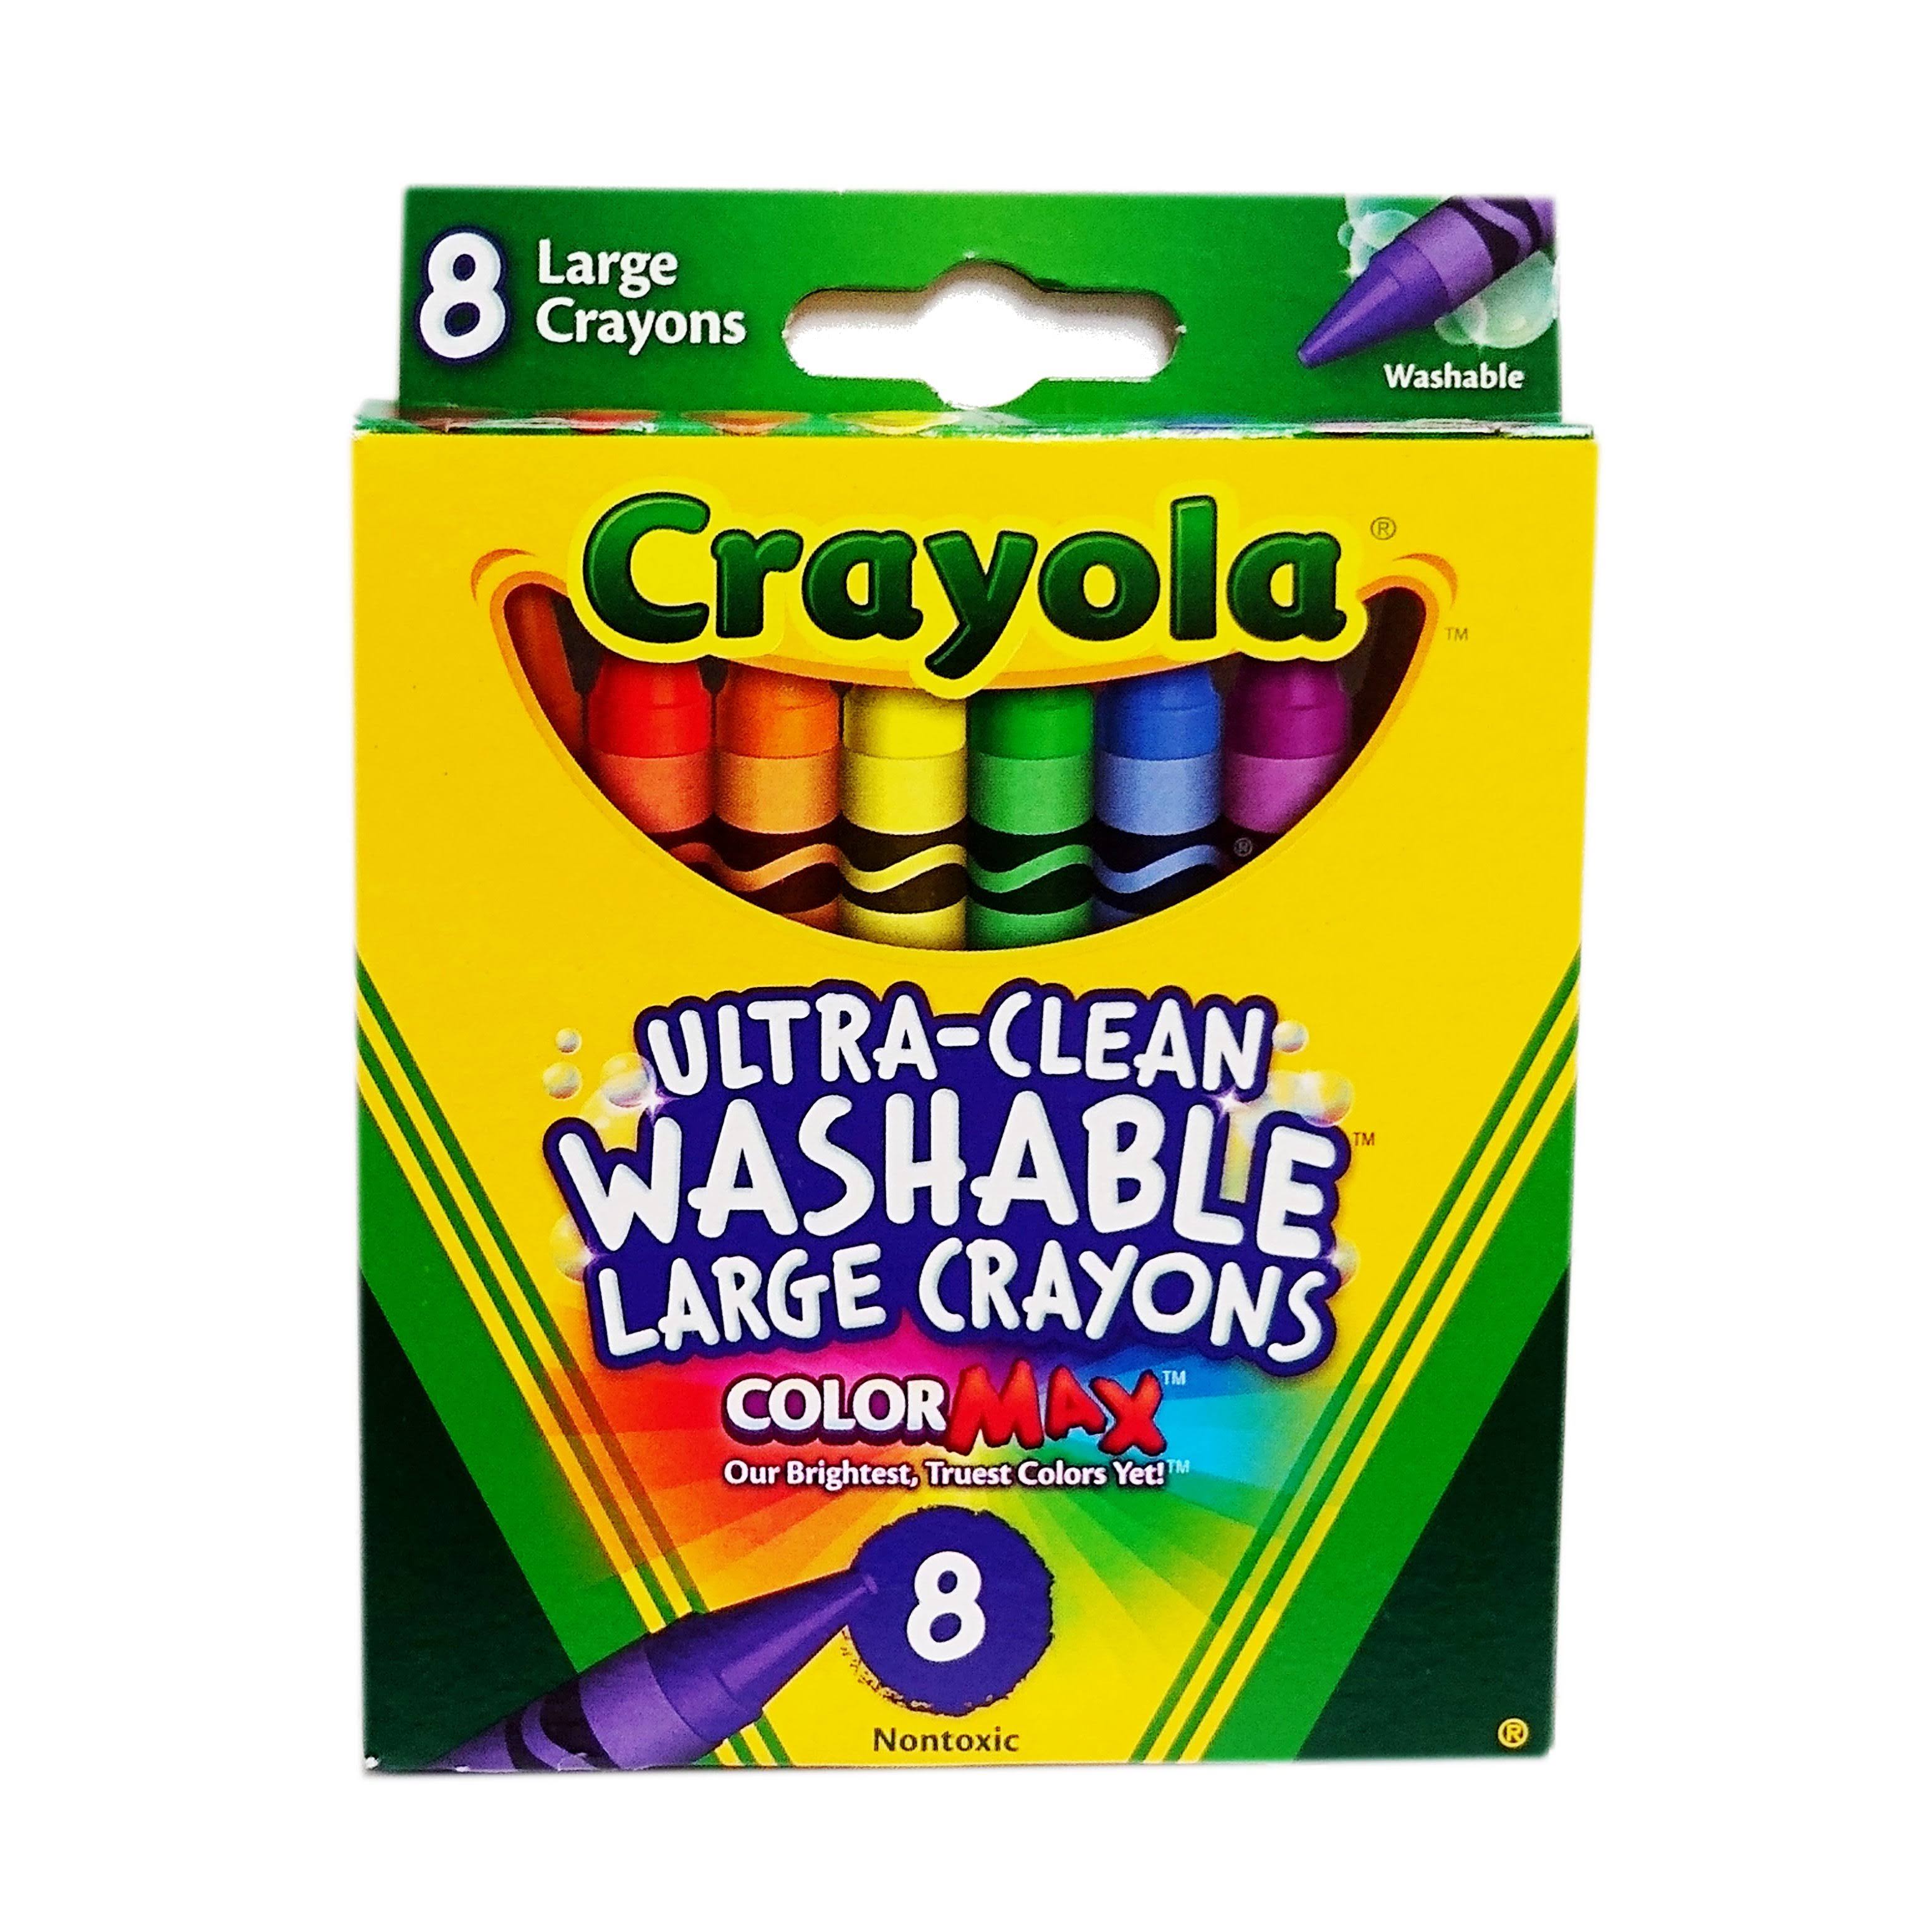 Crayola Washable Crayons - Large, 8 Pack